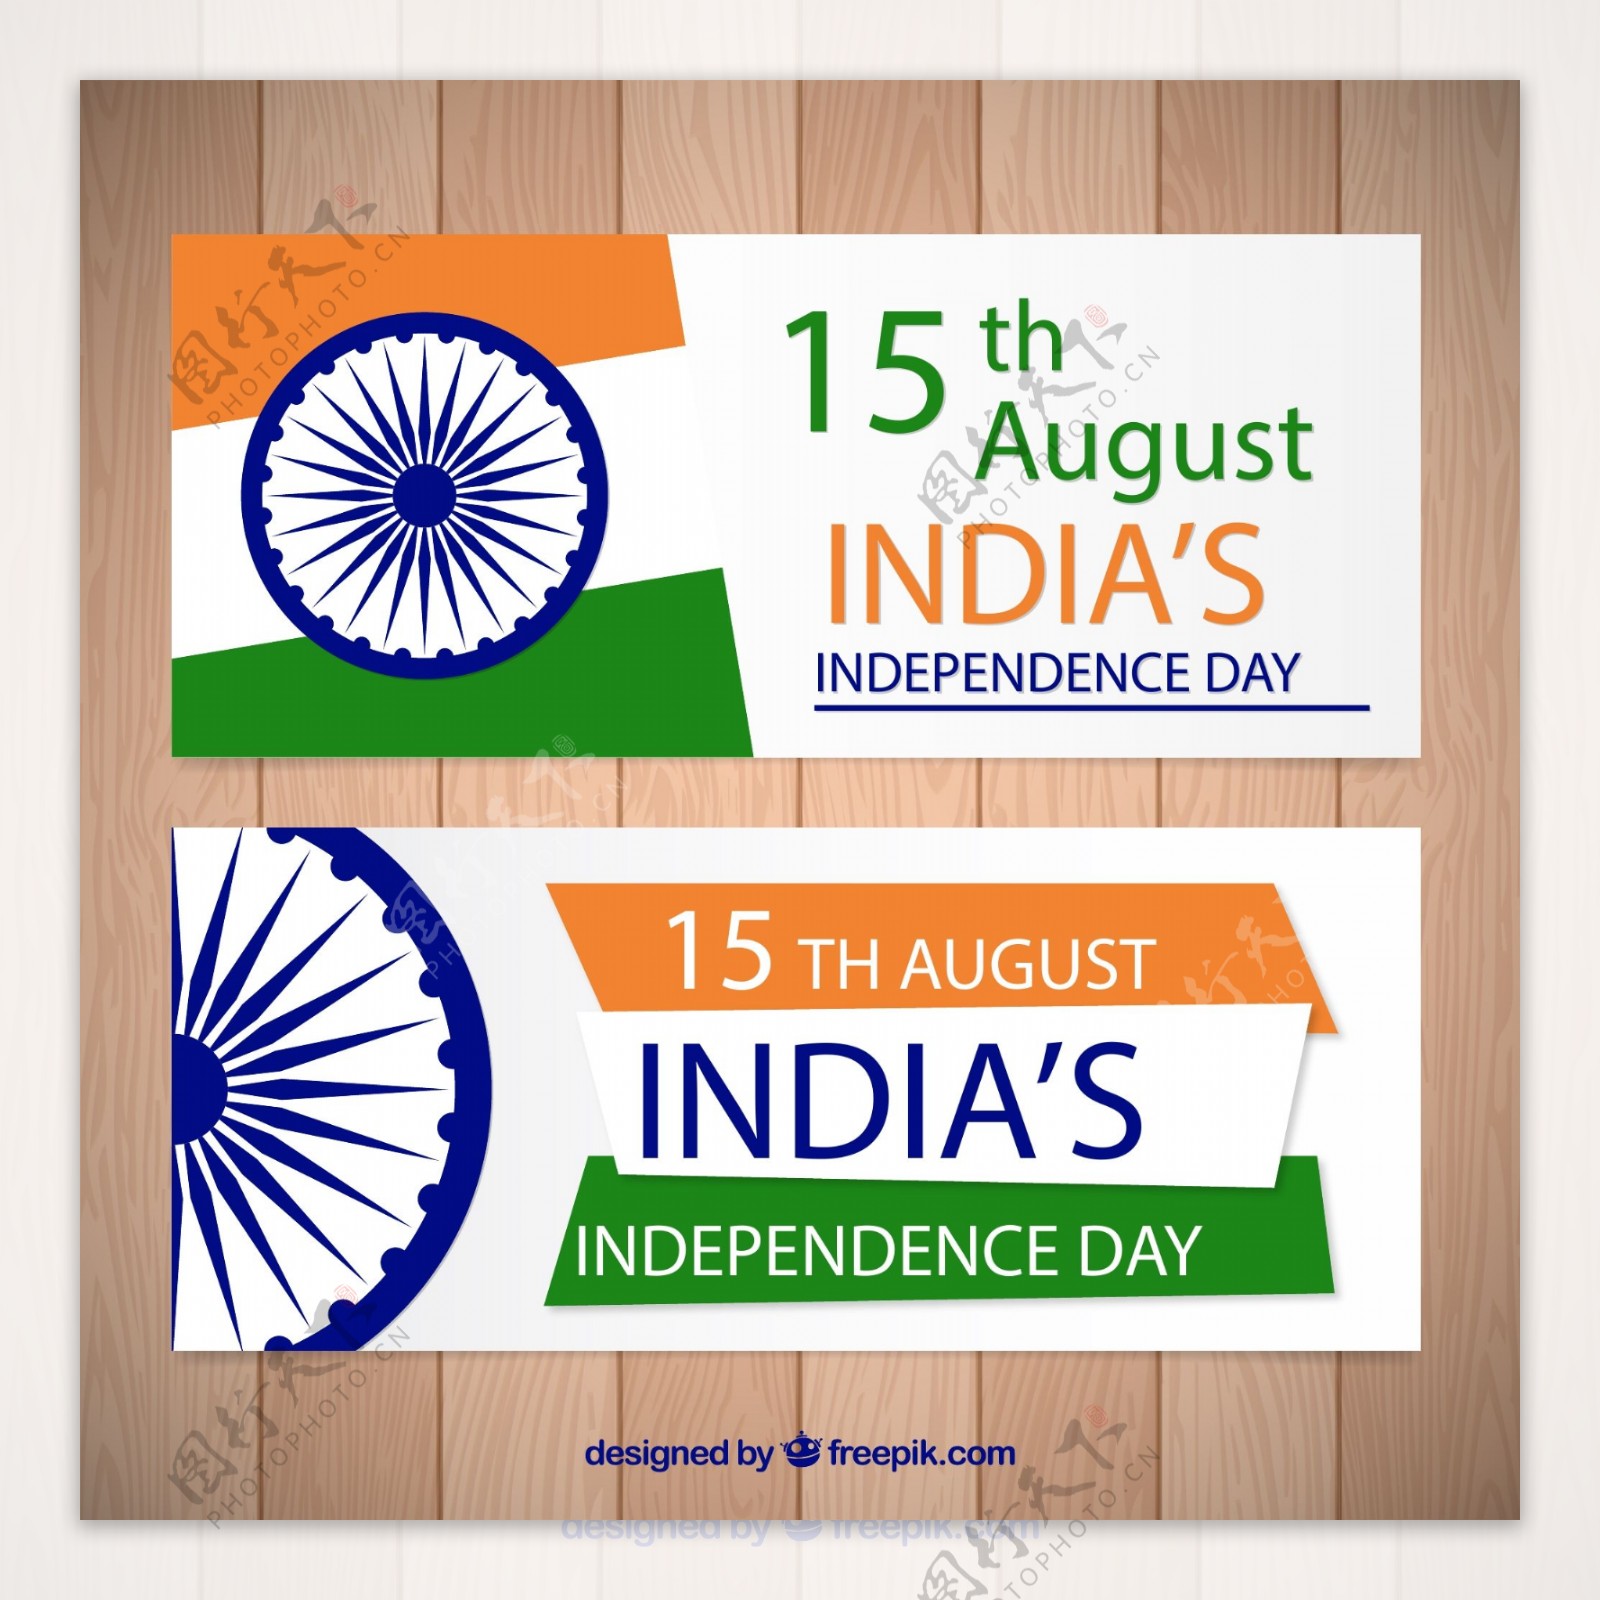 印度独立日横幅